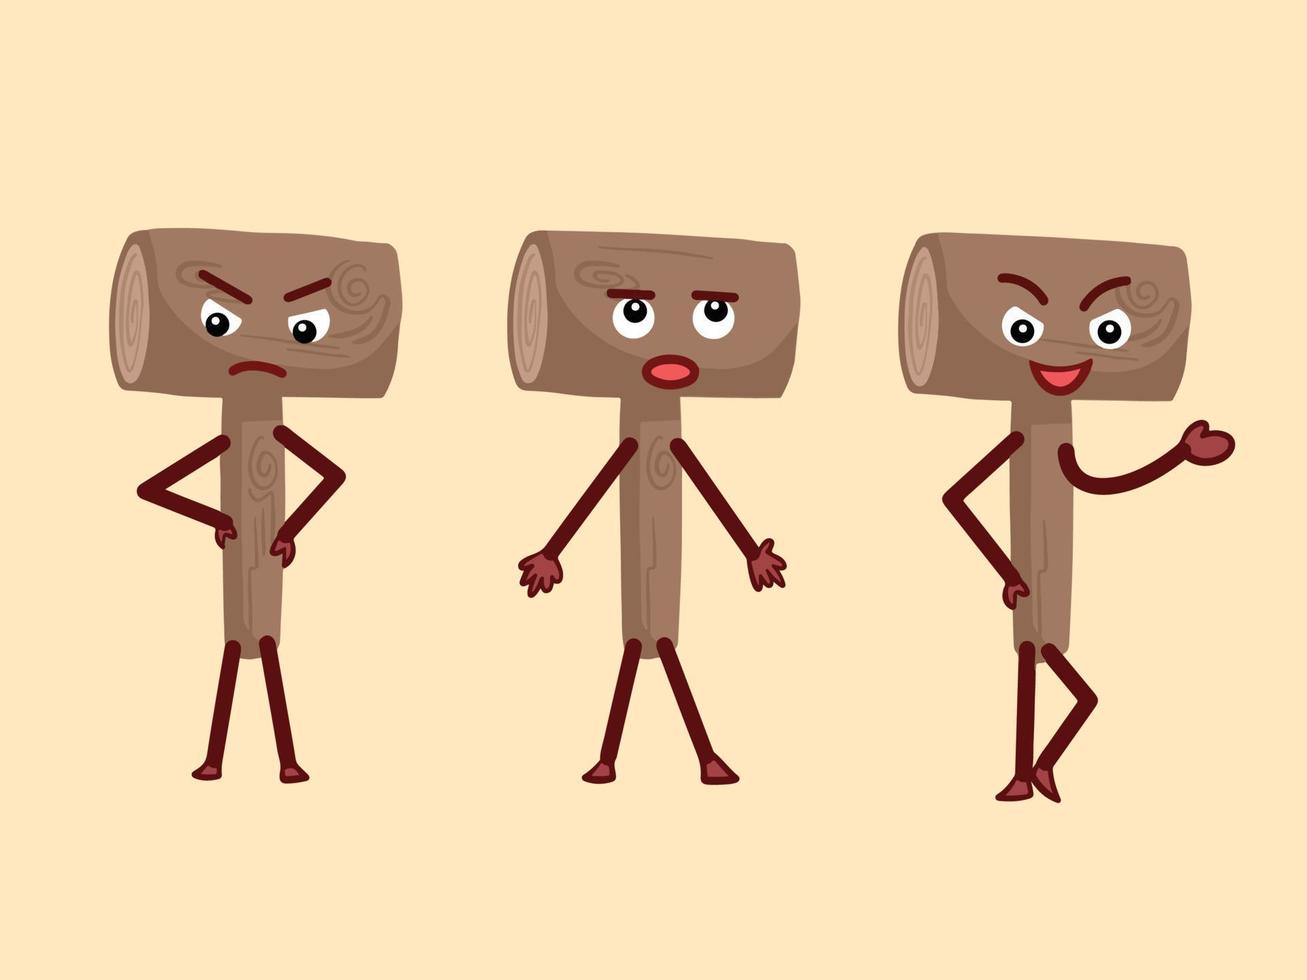 três conjuntos de ilustração de mascote de personagem de vetor de objeto de martelo de madeira isolada em fundo liso. desenho em quadrinhos de desenho animado com estilo simples de arte plana com expressões engraçadas e linguagem corporal.